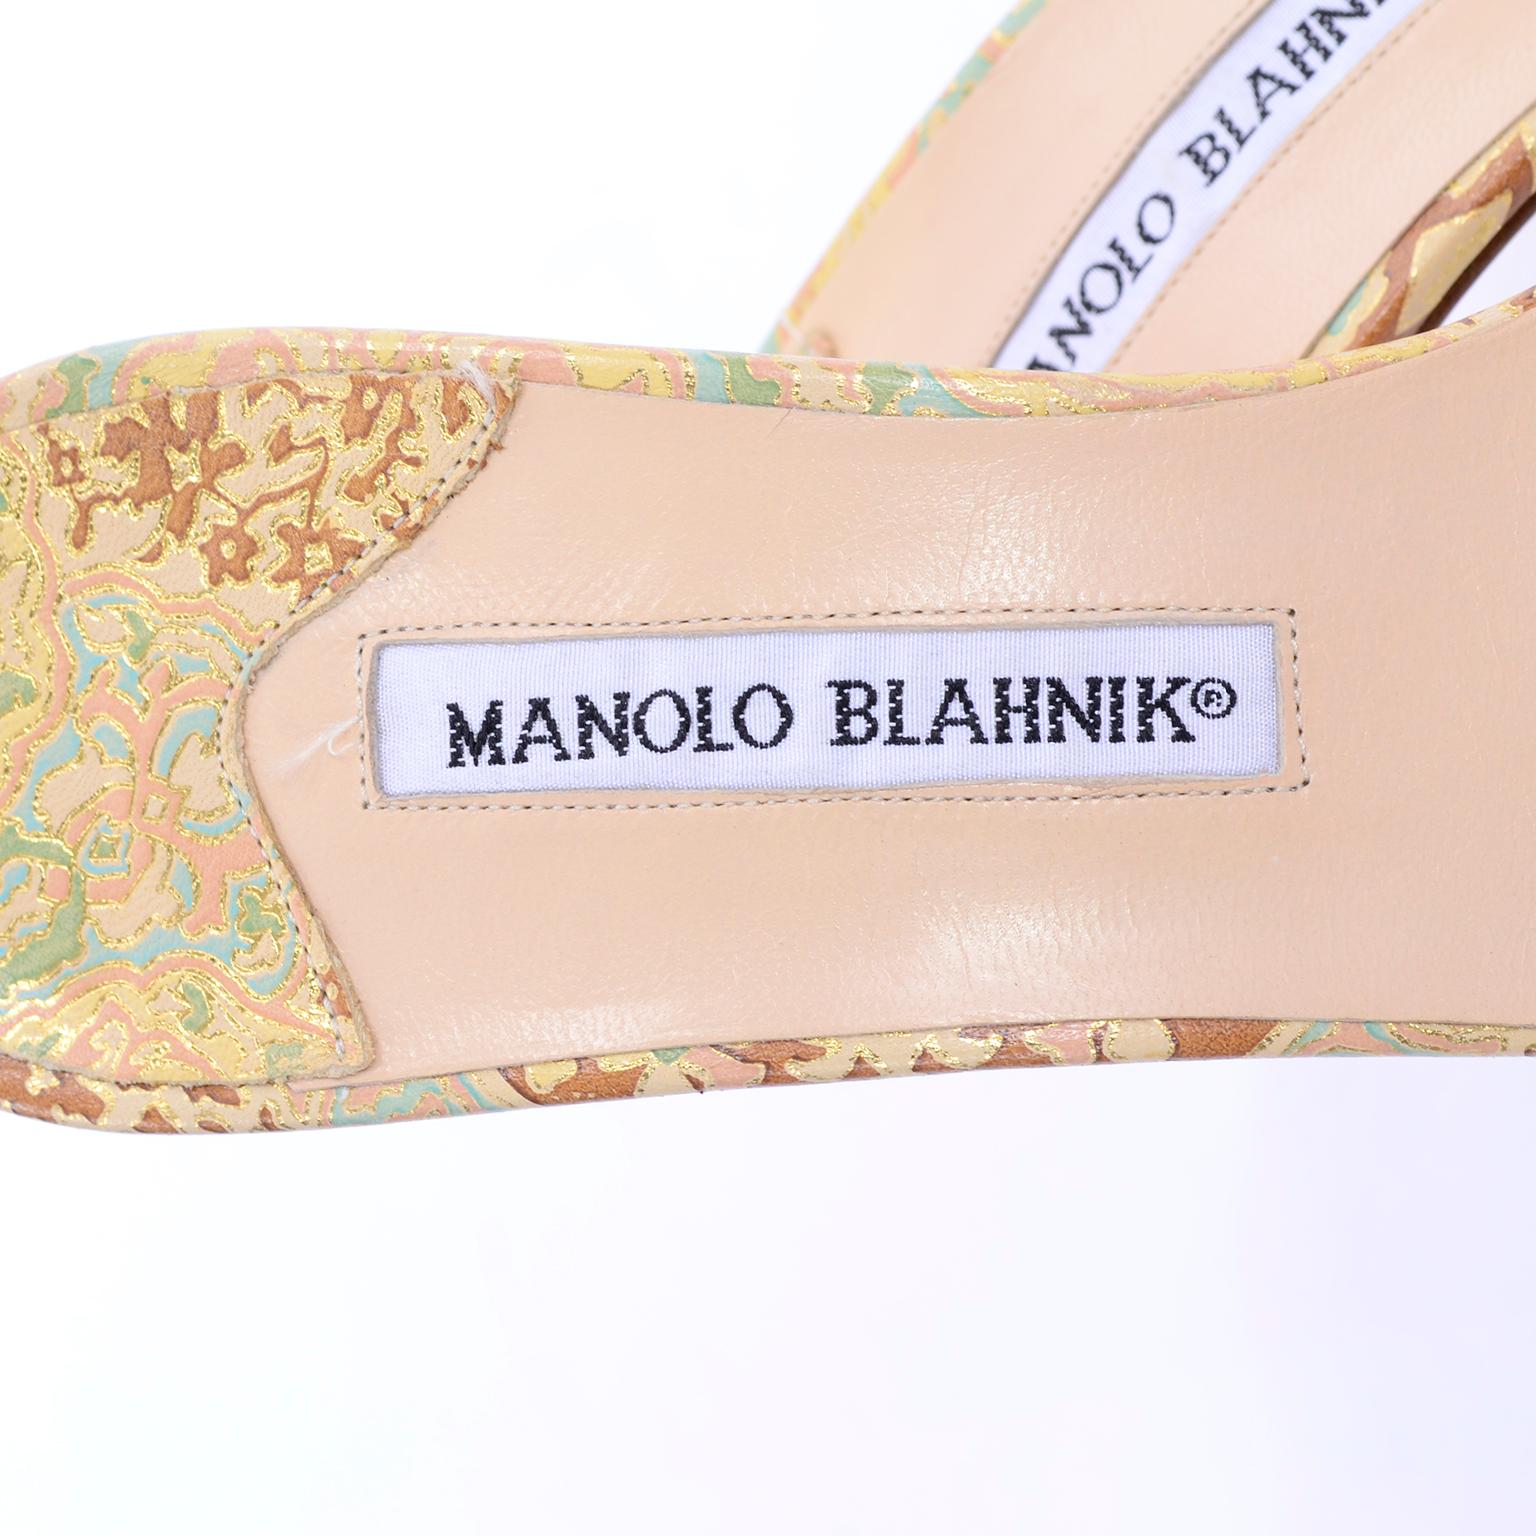 Manolo Blahnik Shoes Gold Floral Brocade Sandal Slides With Heels Size 38.5 5